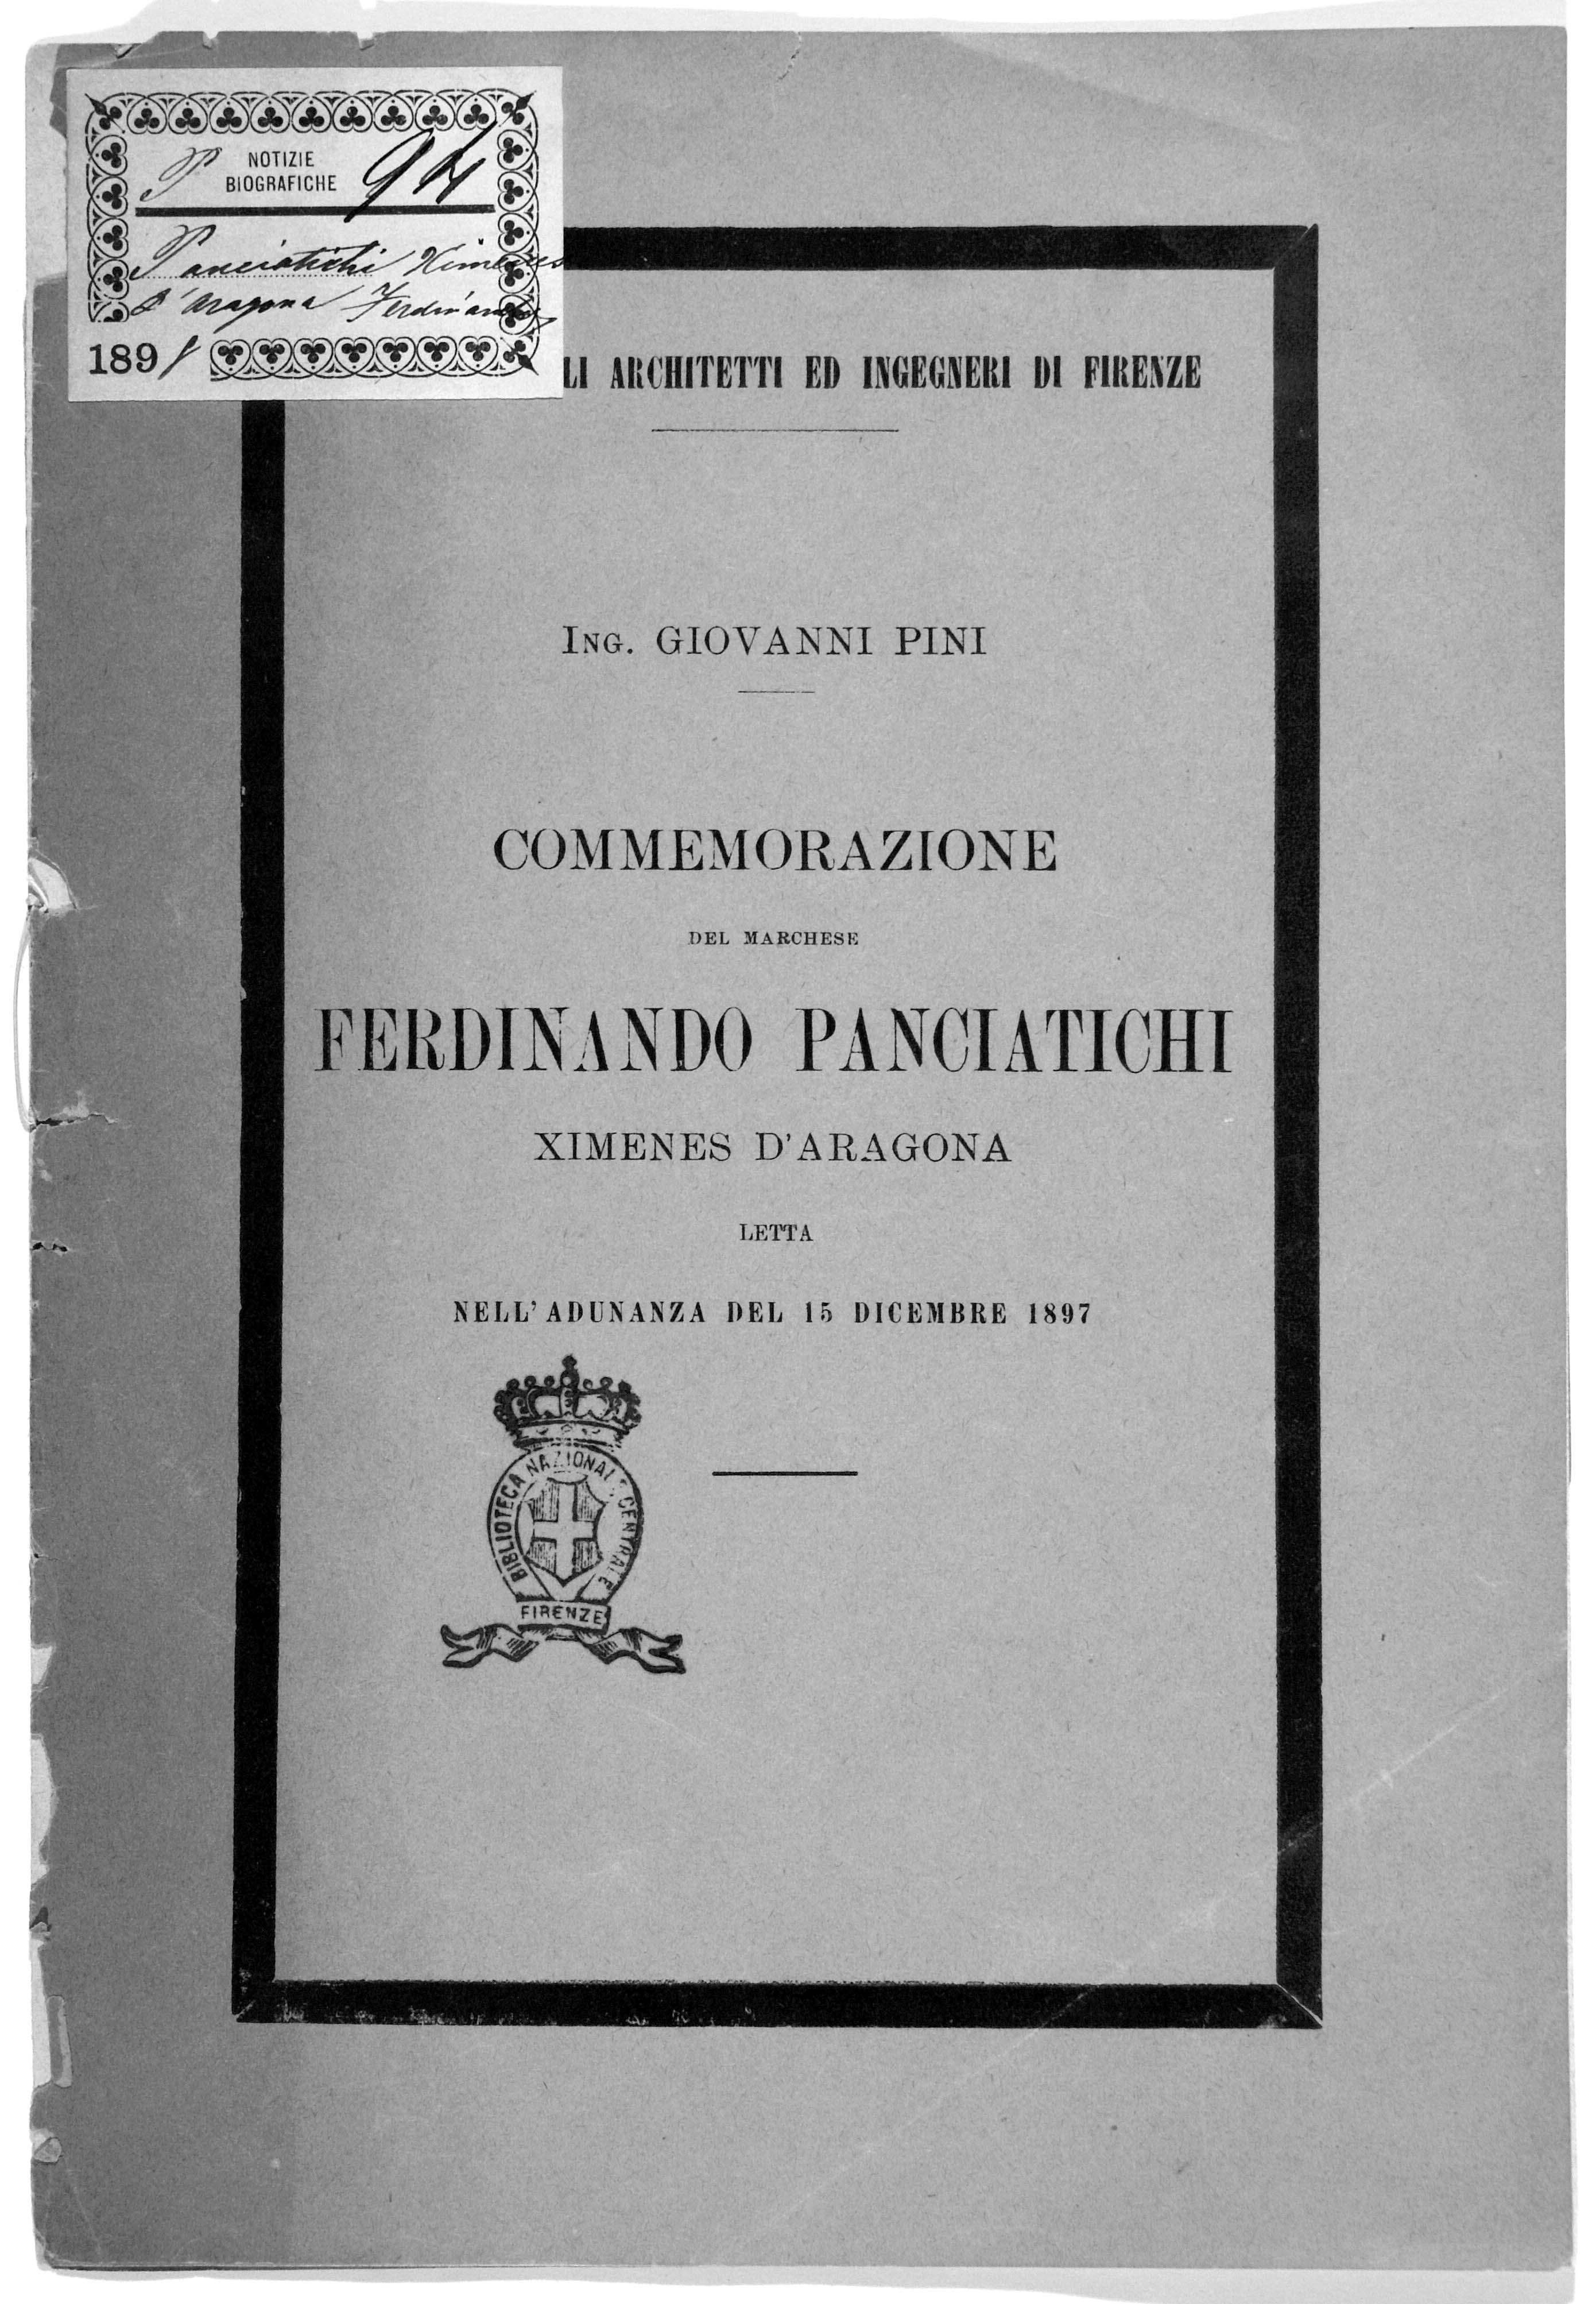 Commemorazione Ferdinando Panciatichi